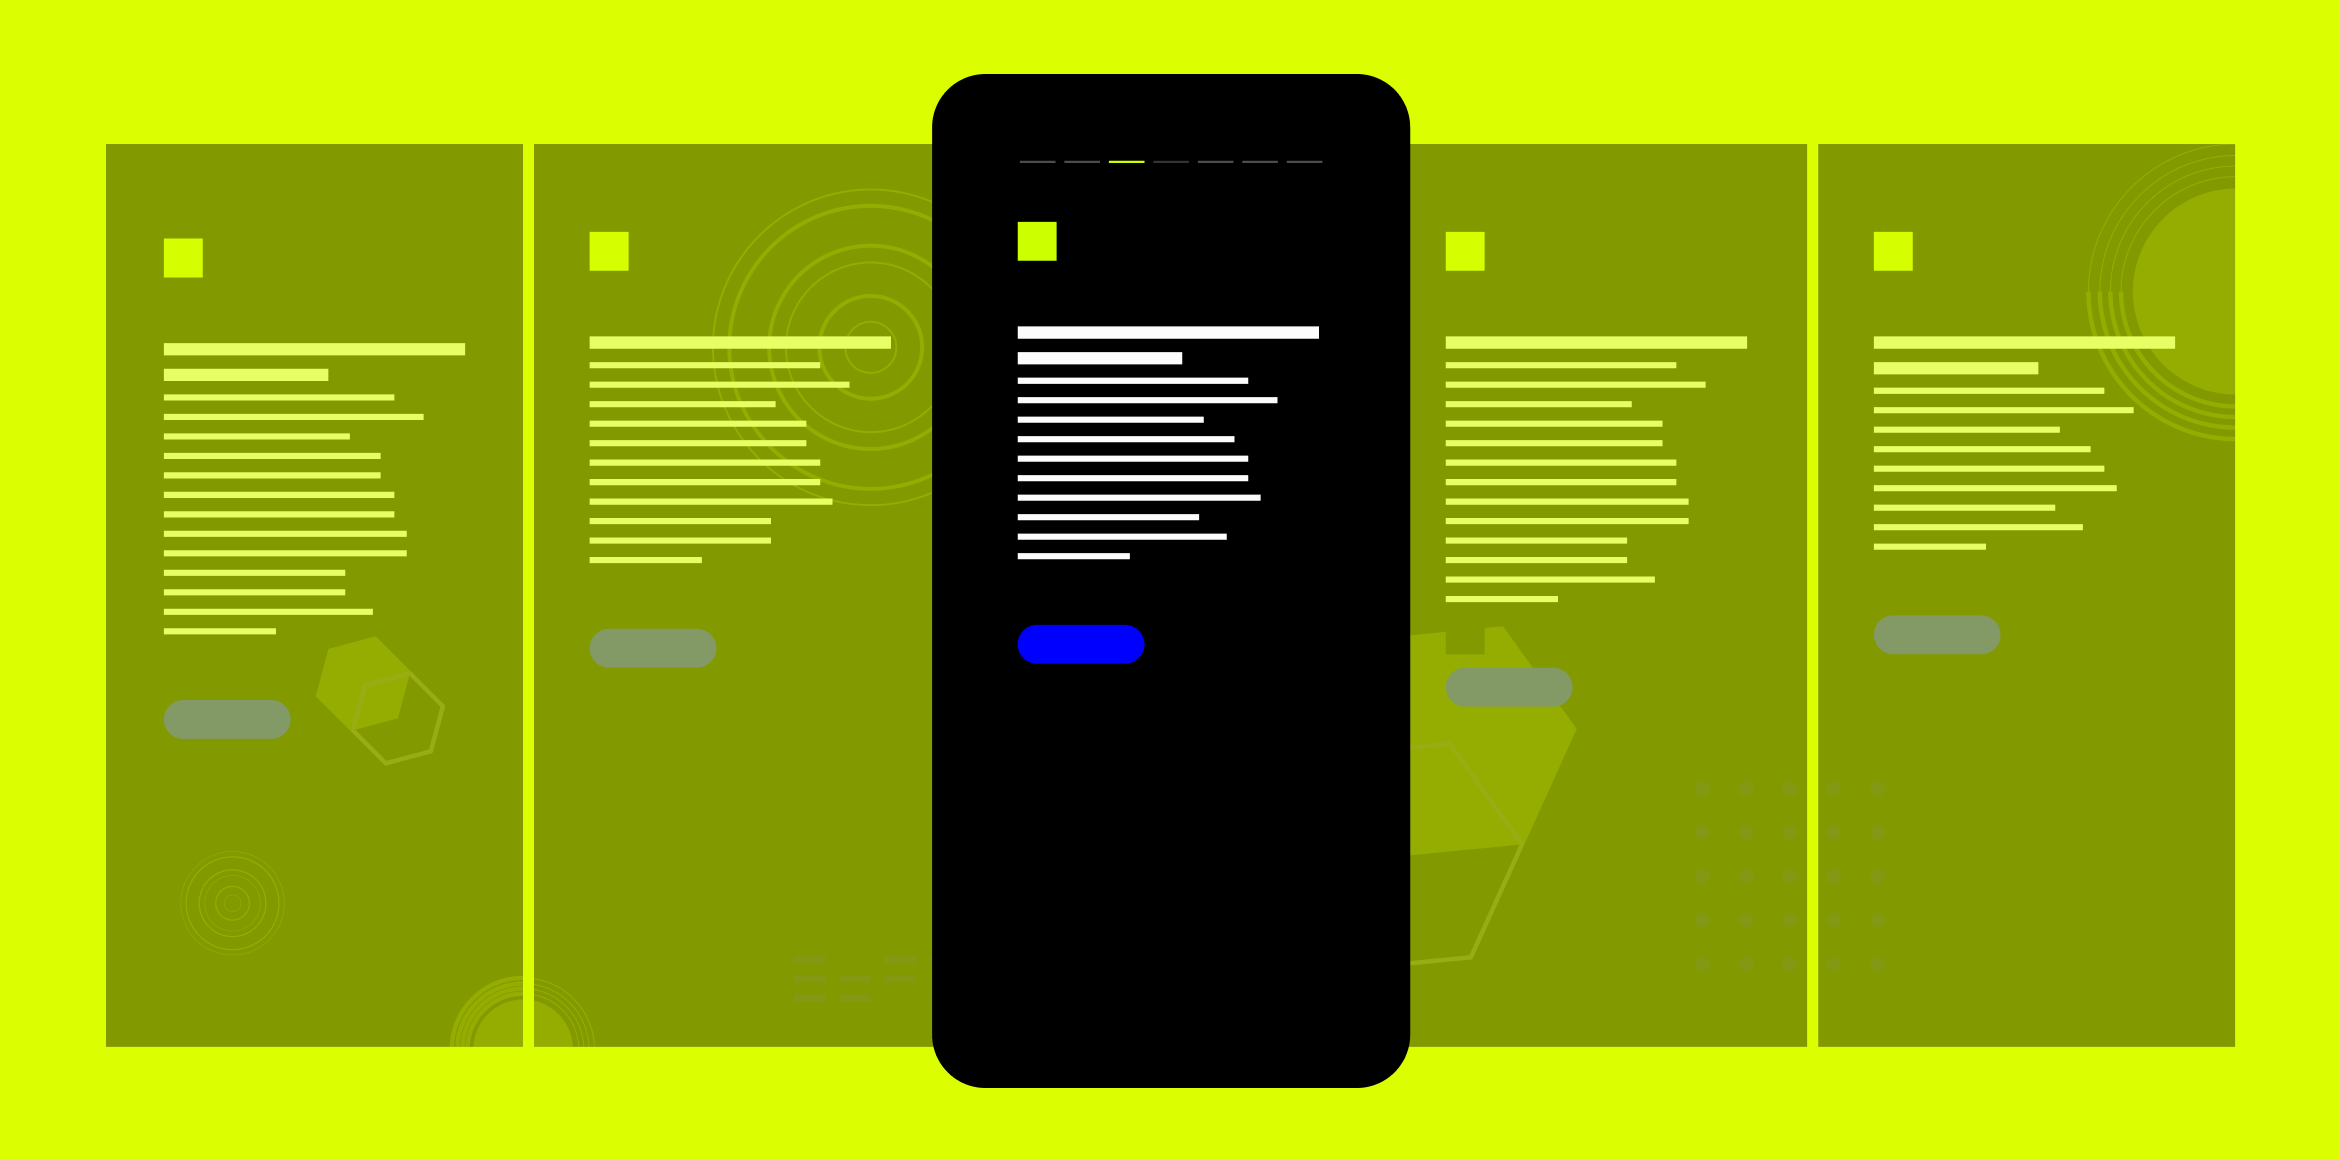 Vor einem grünen Hintergrund sieht man 4 blass dargestellte und 1 deutlich schwarz dargestelltes Smartphone. Auf dem Bildschirm wird Text angedeutet.